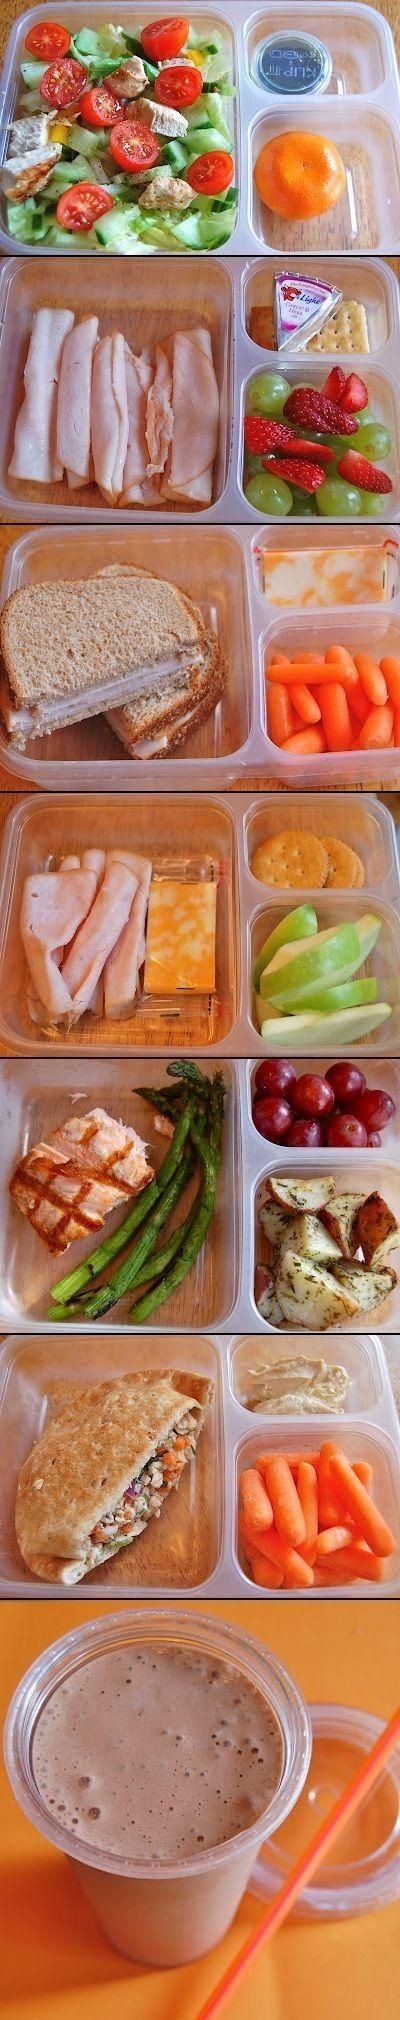 Healthy Lunch Ideas - Joybx